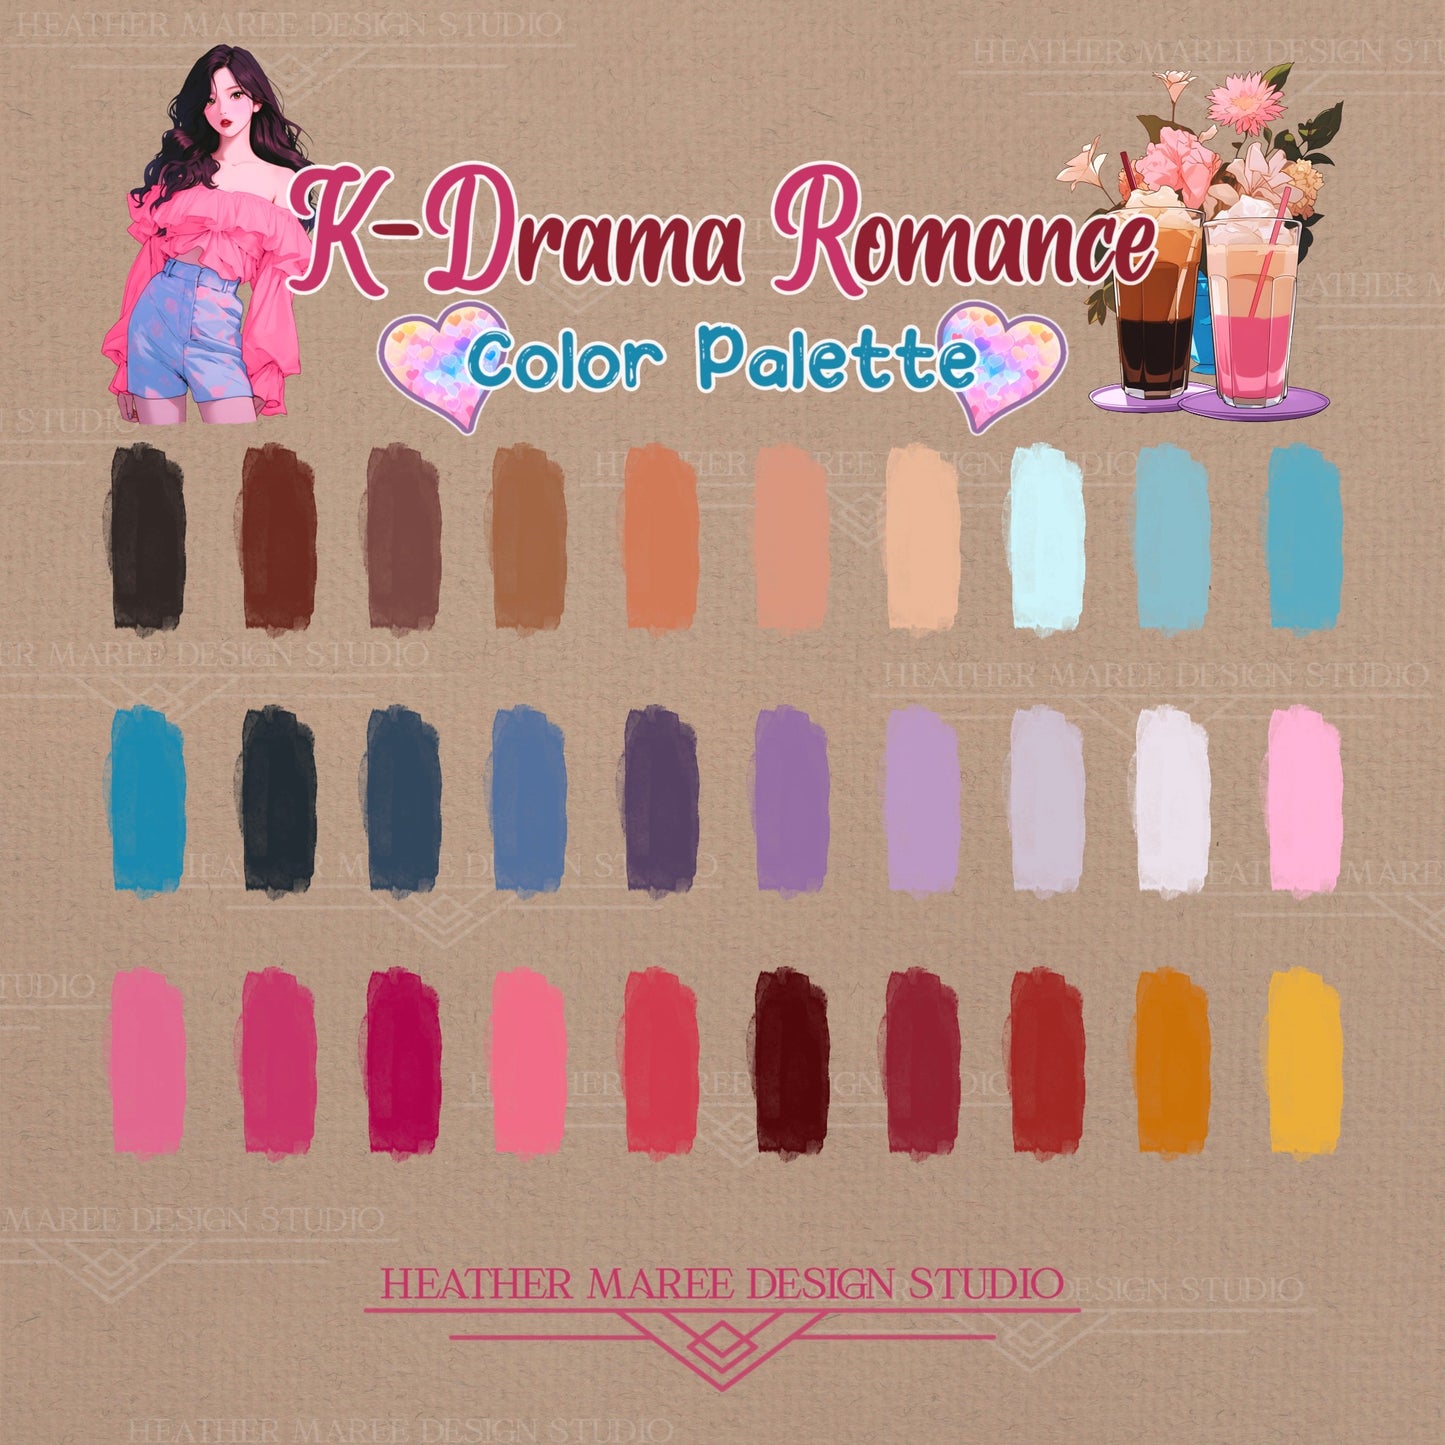 K-Drama Romance Color Palette